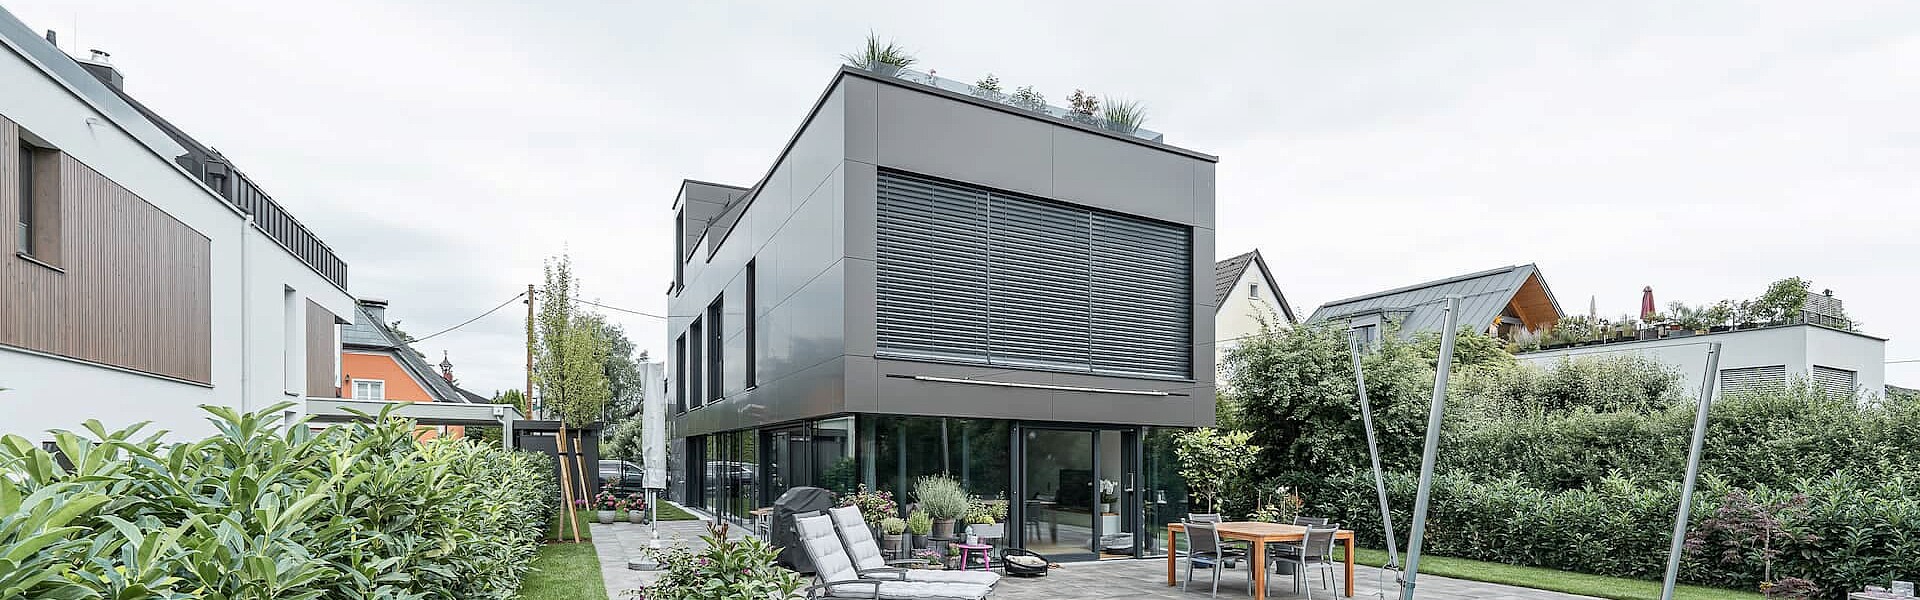 Sliderbild der Fassade eines Einfamilienhauses in Salzburg